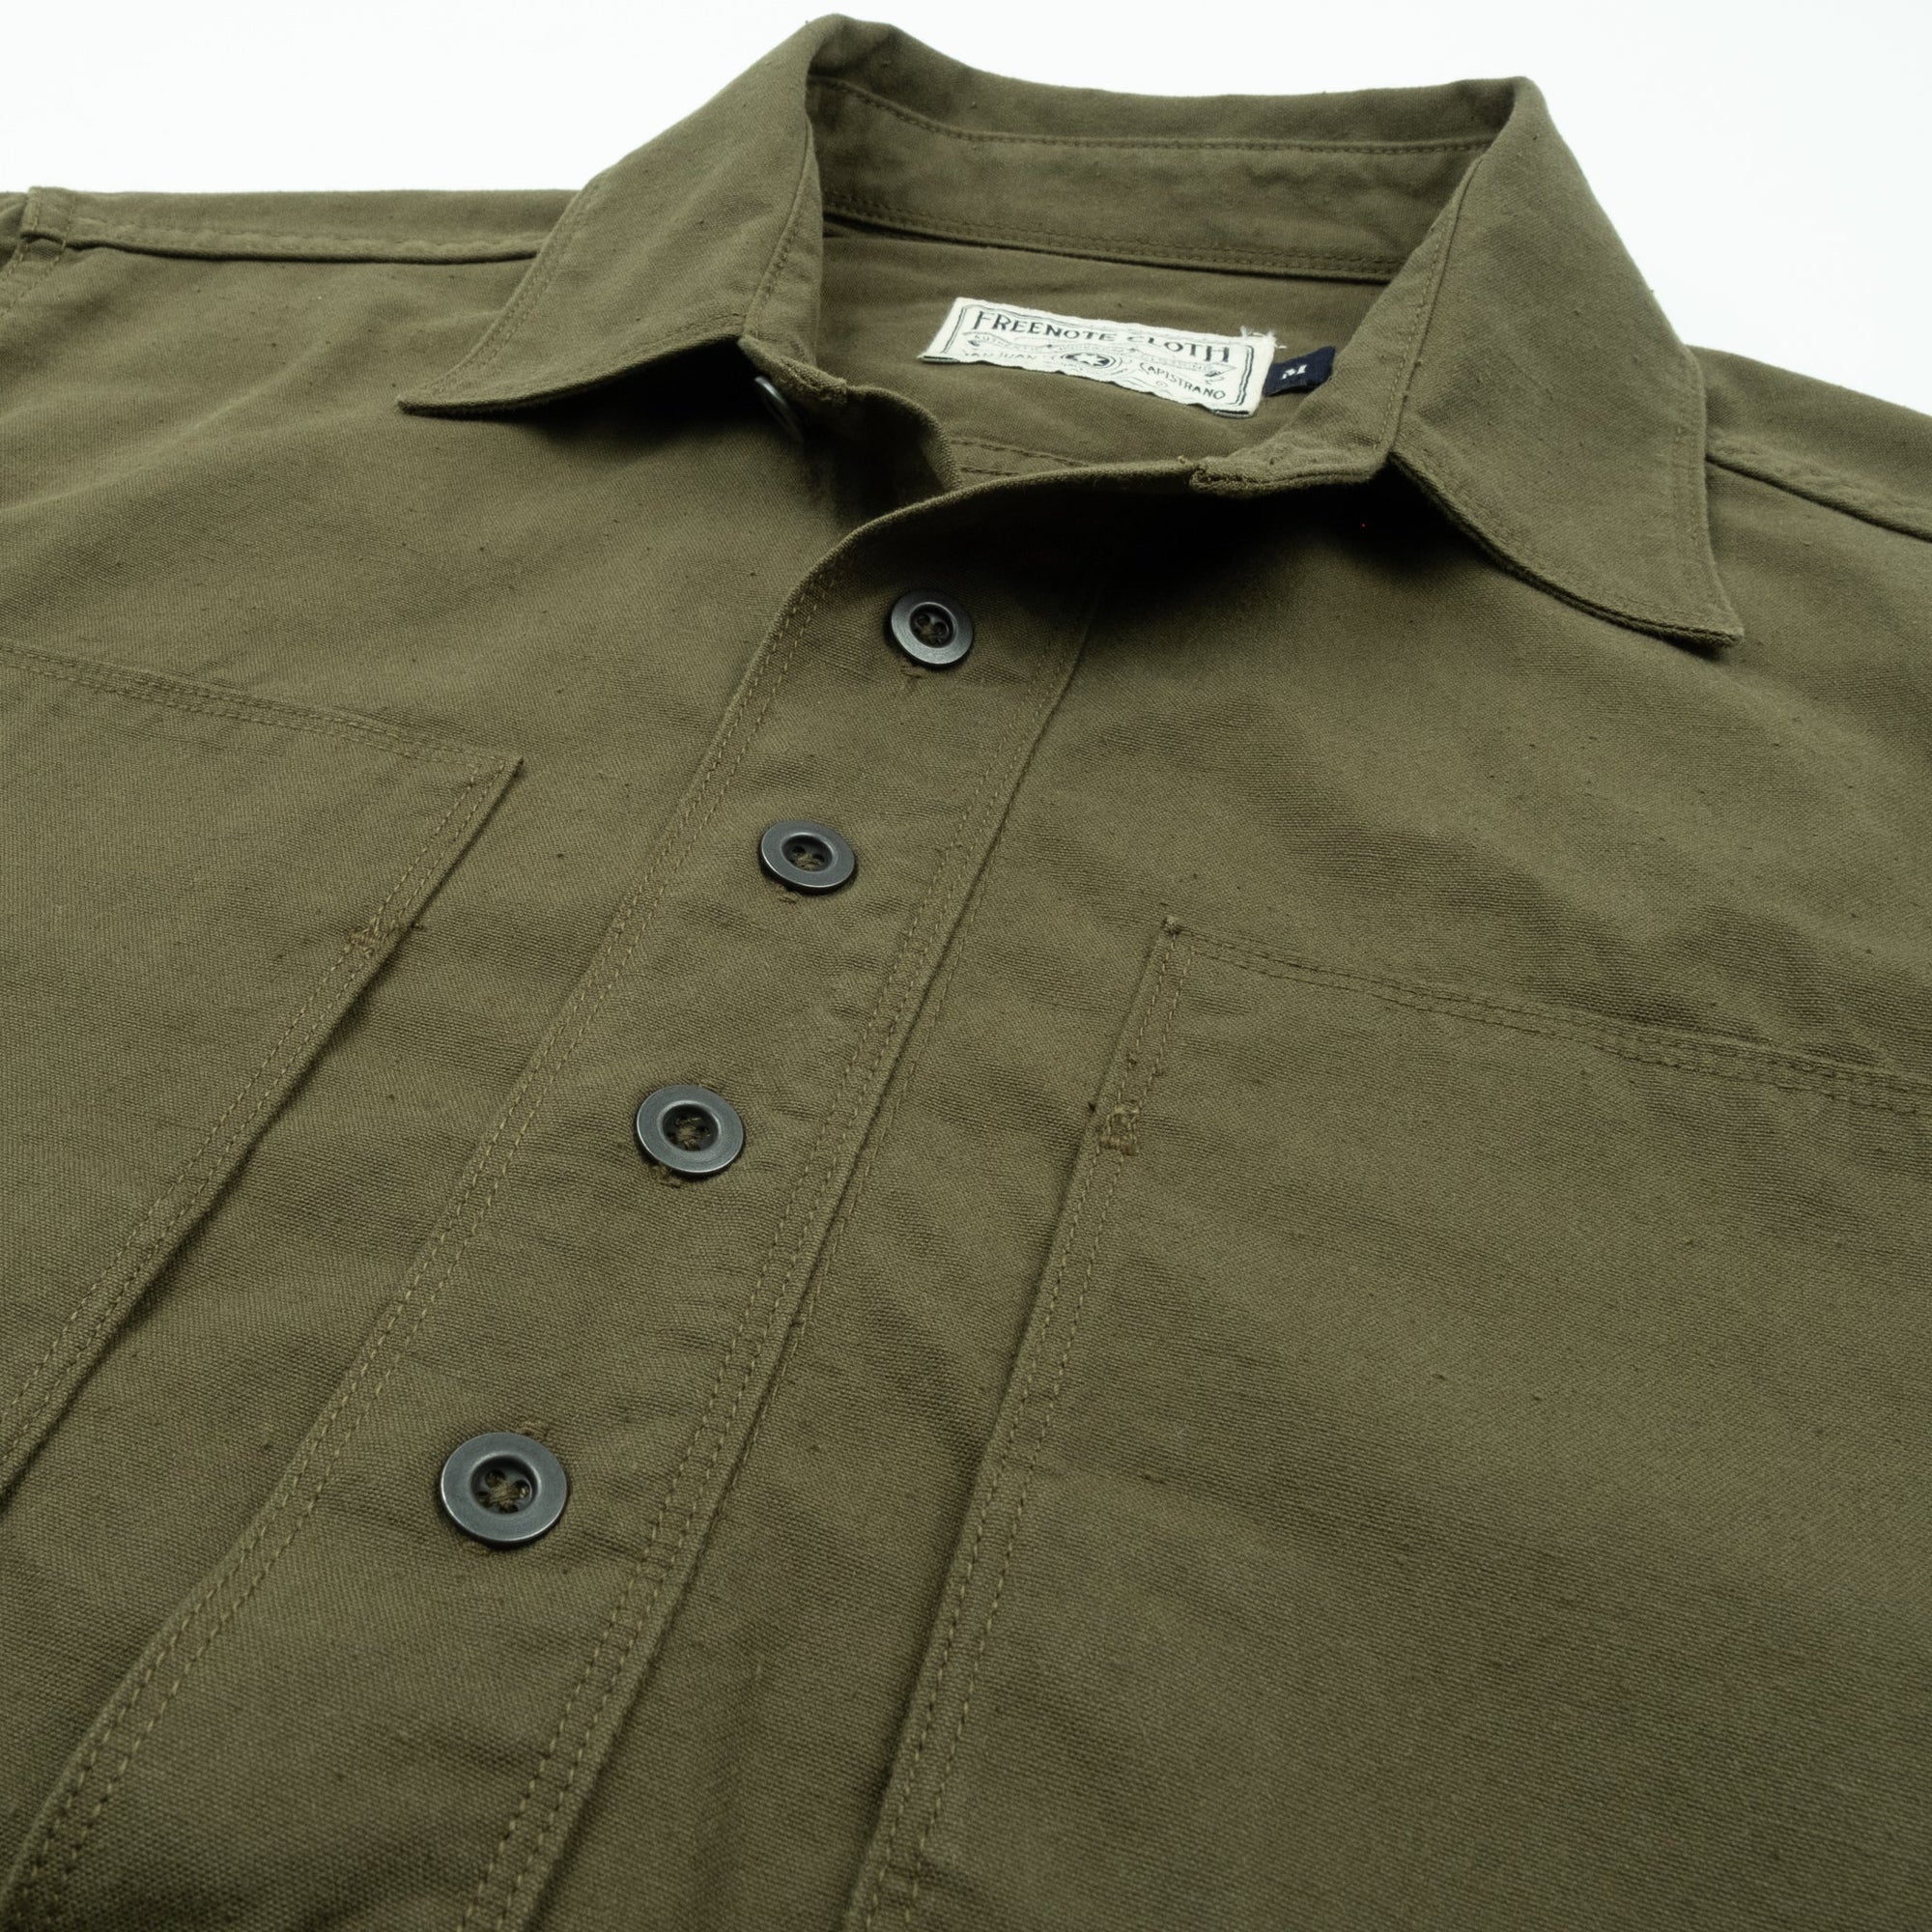 Freenote Cloth Deck Popover - S/S Army Green